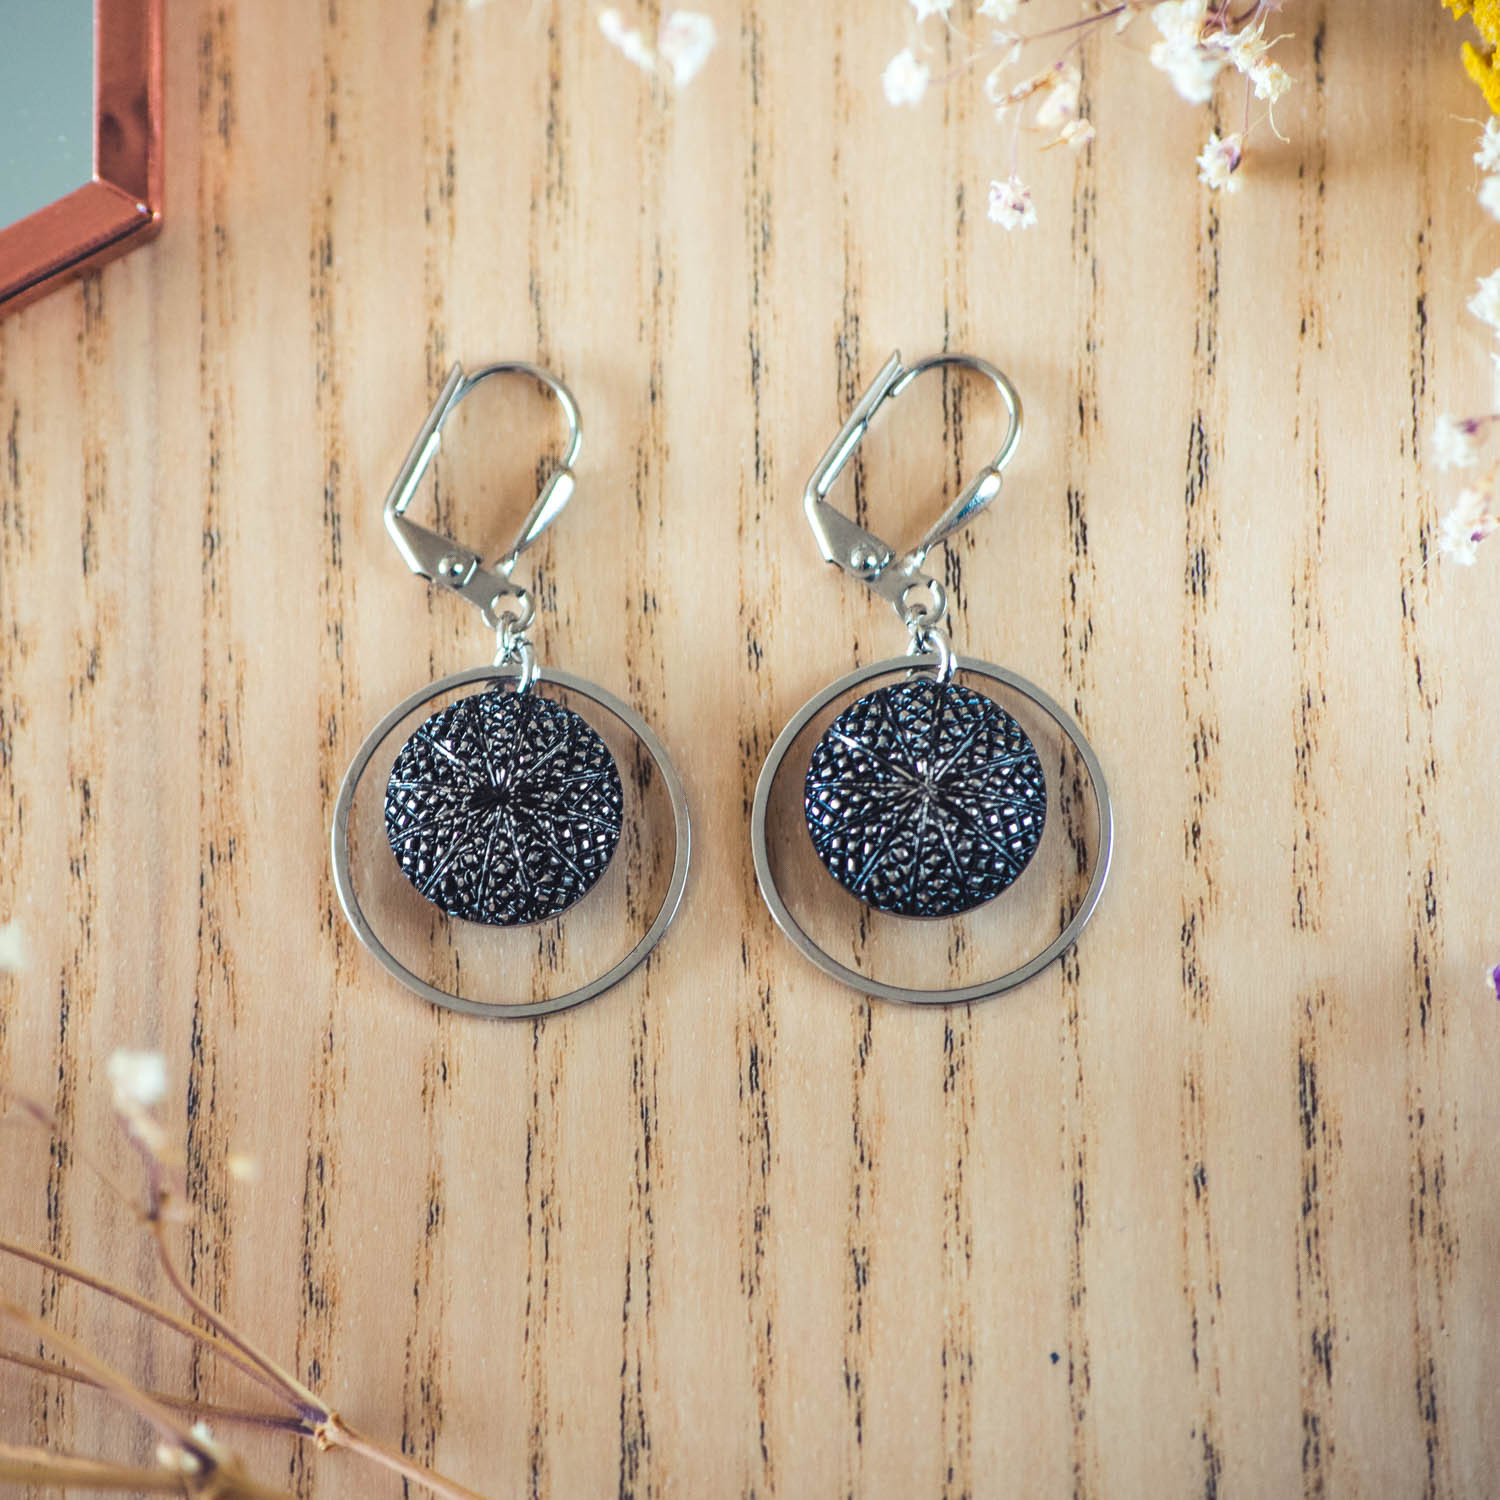 Assuna – Boucles d’oreilles petites dormeuses cercles Victoire argent inspiration vintage